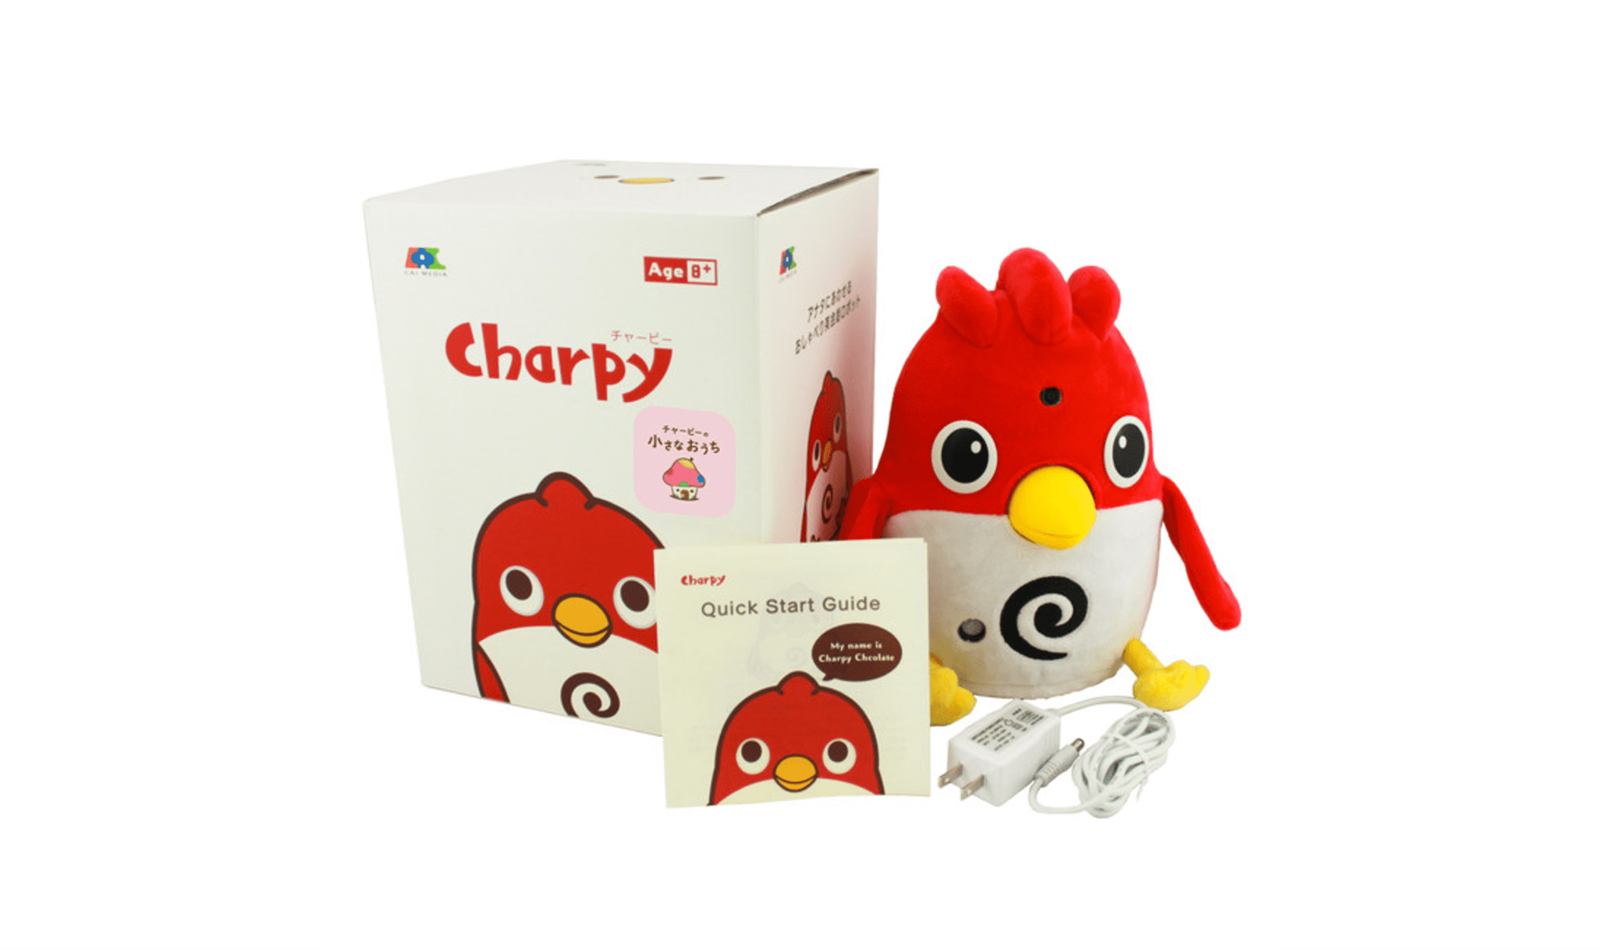  Charpy（チャーピー）：音声認識でユーザーの⾔葉を理解して、対話することができる英会話ロボット